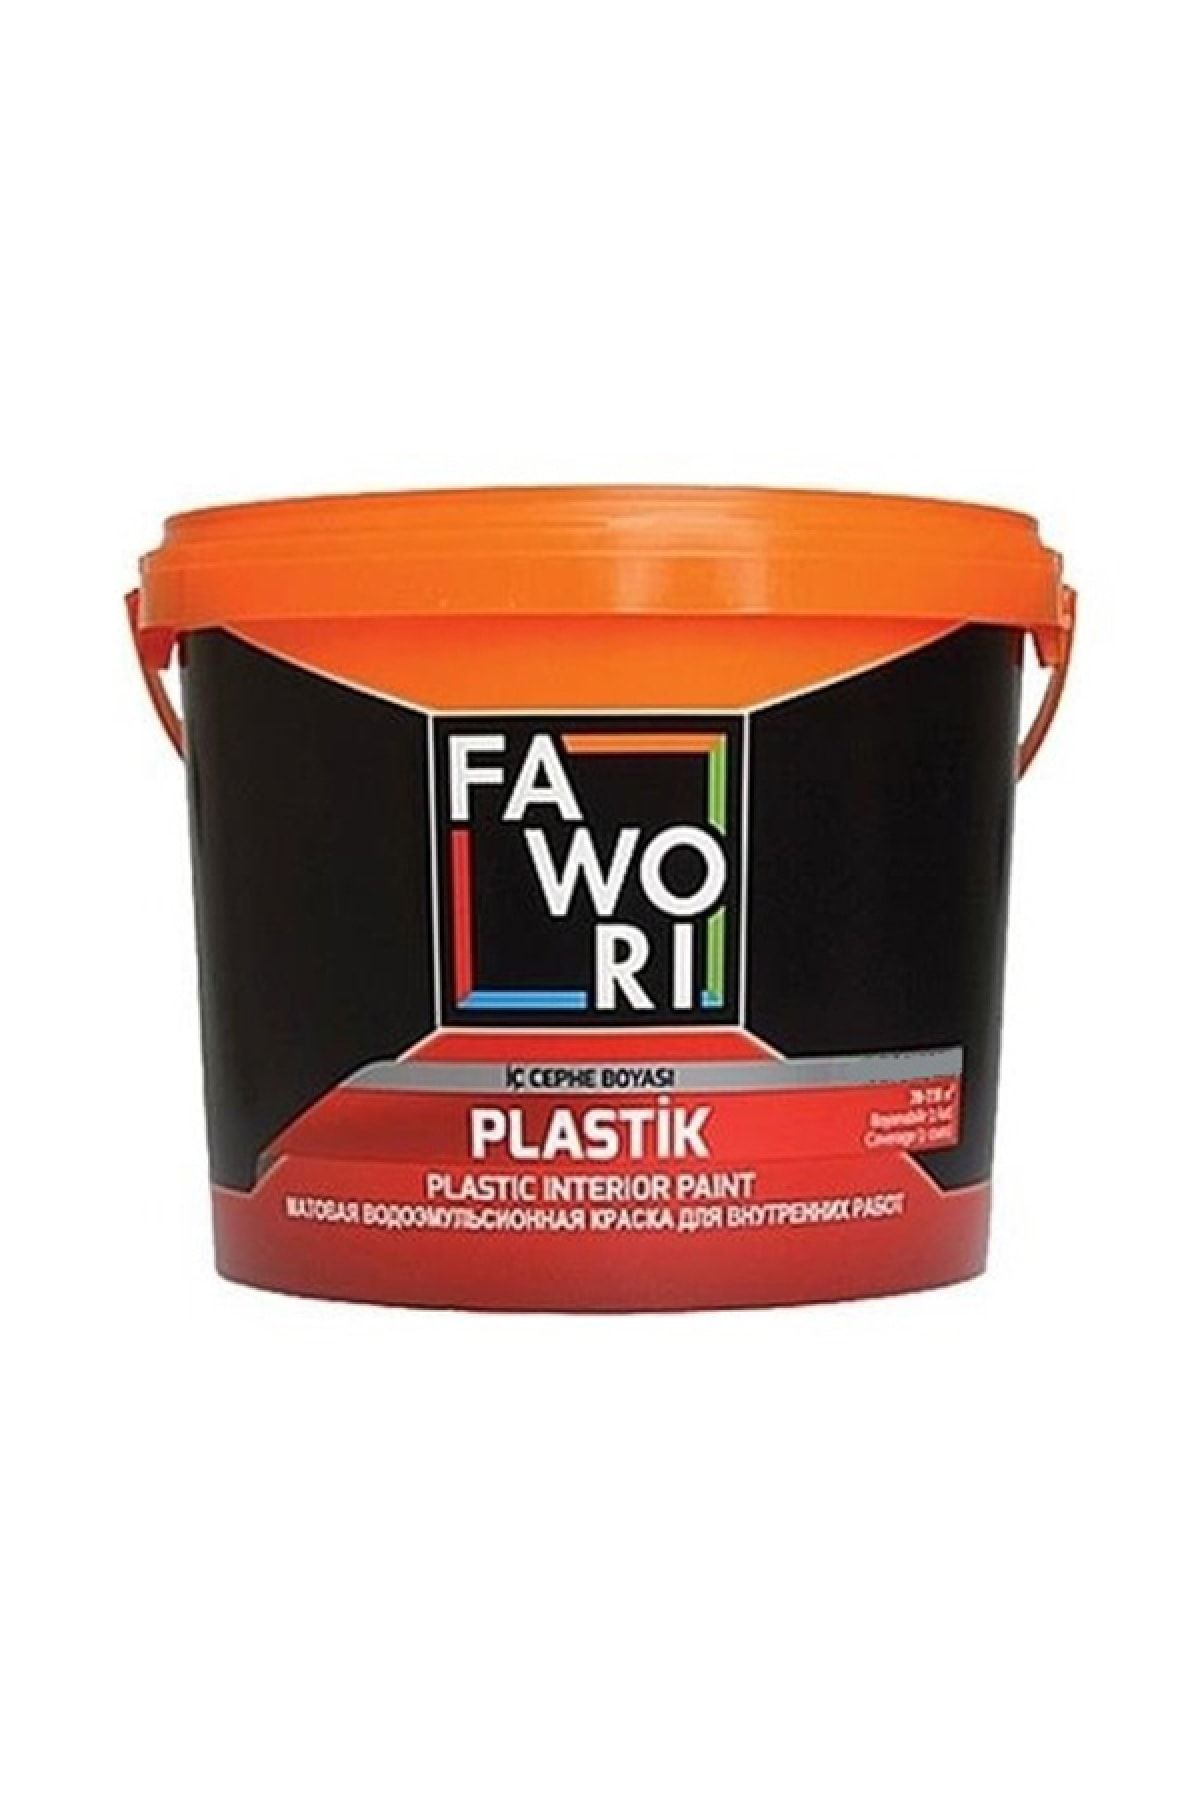 Fawori Plastik Iç Cephe Duvar Boyası 3.5 Kg Renk:fıstık